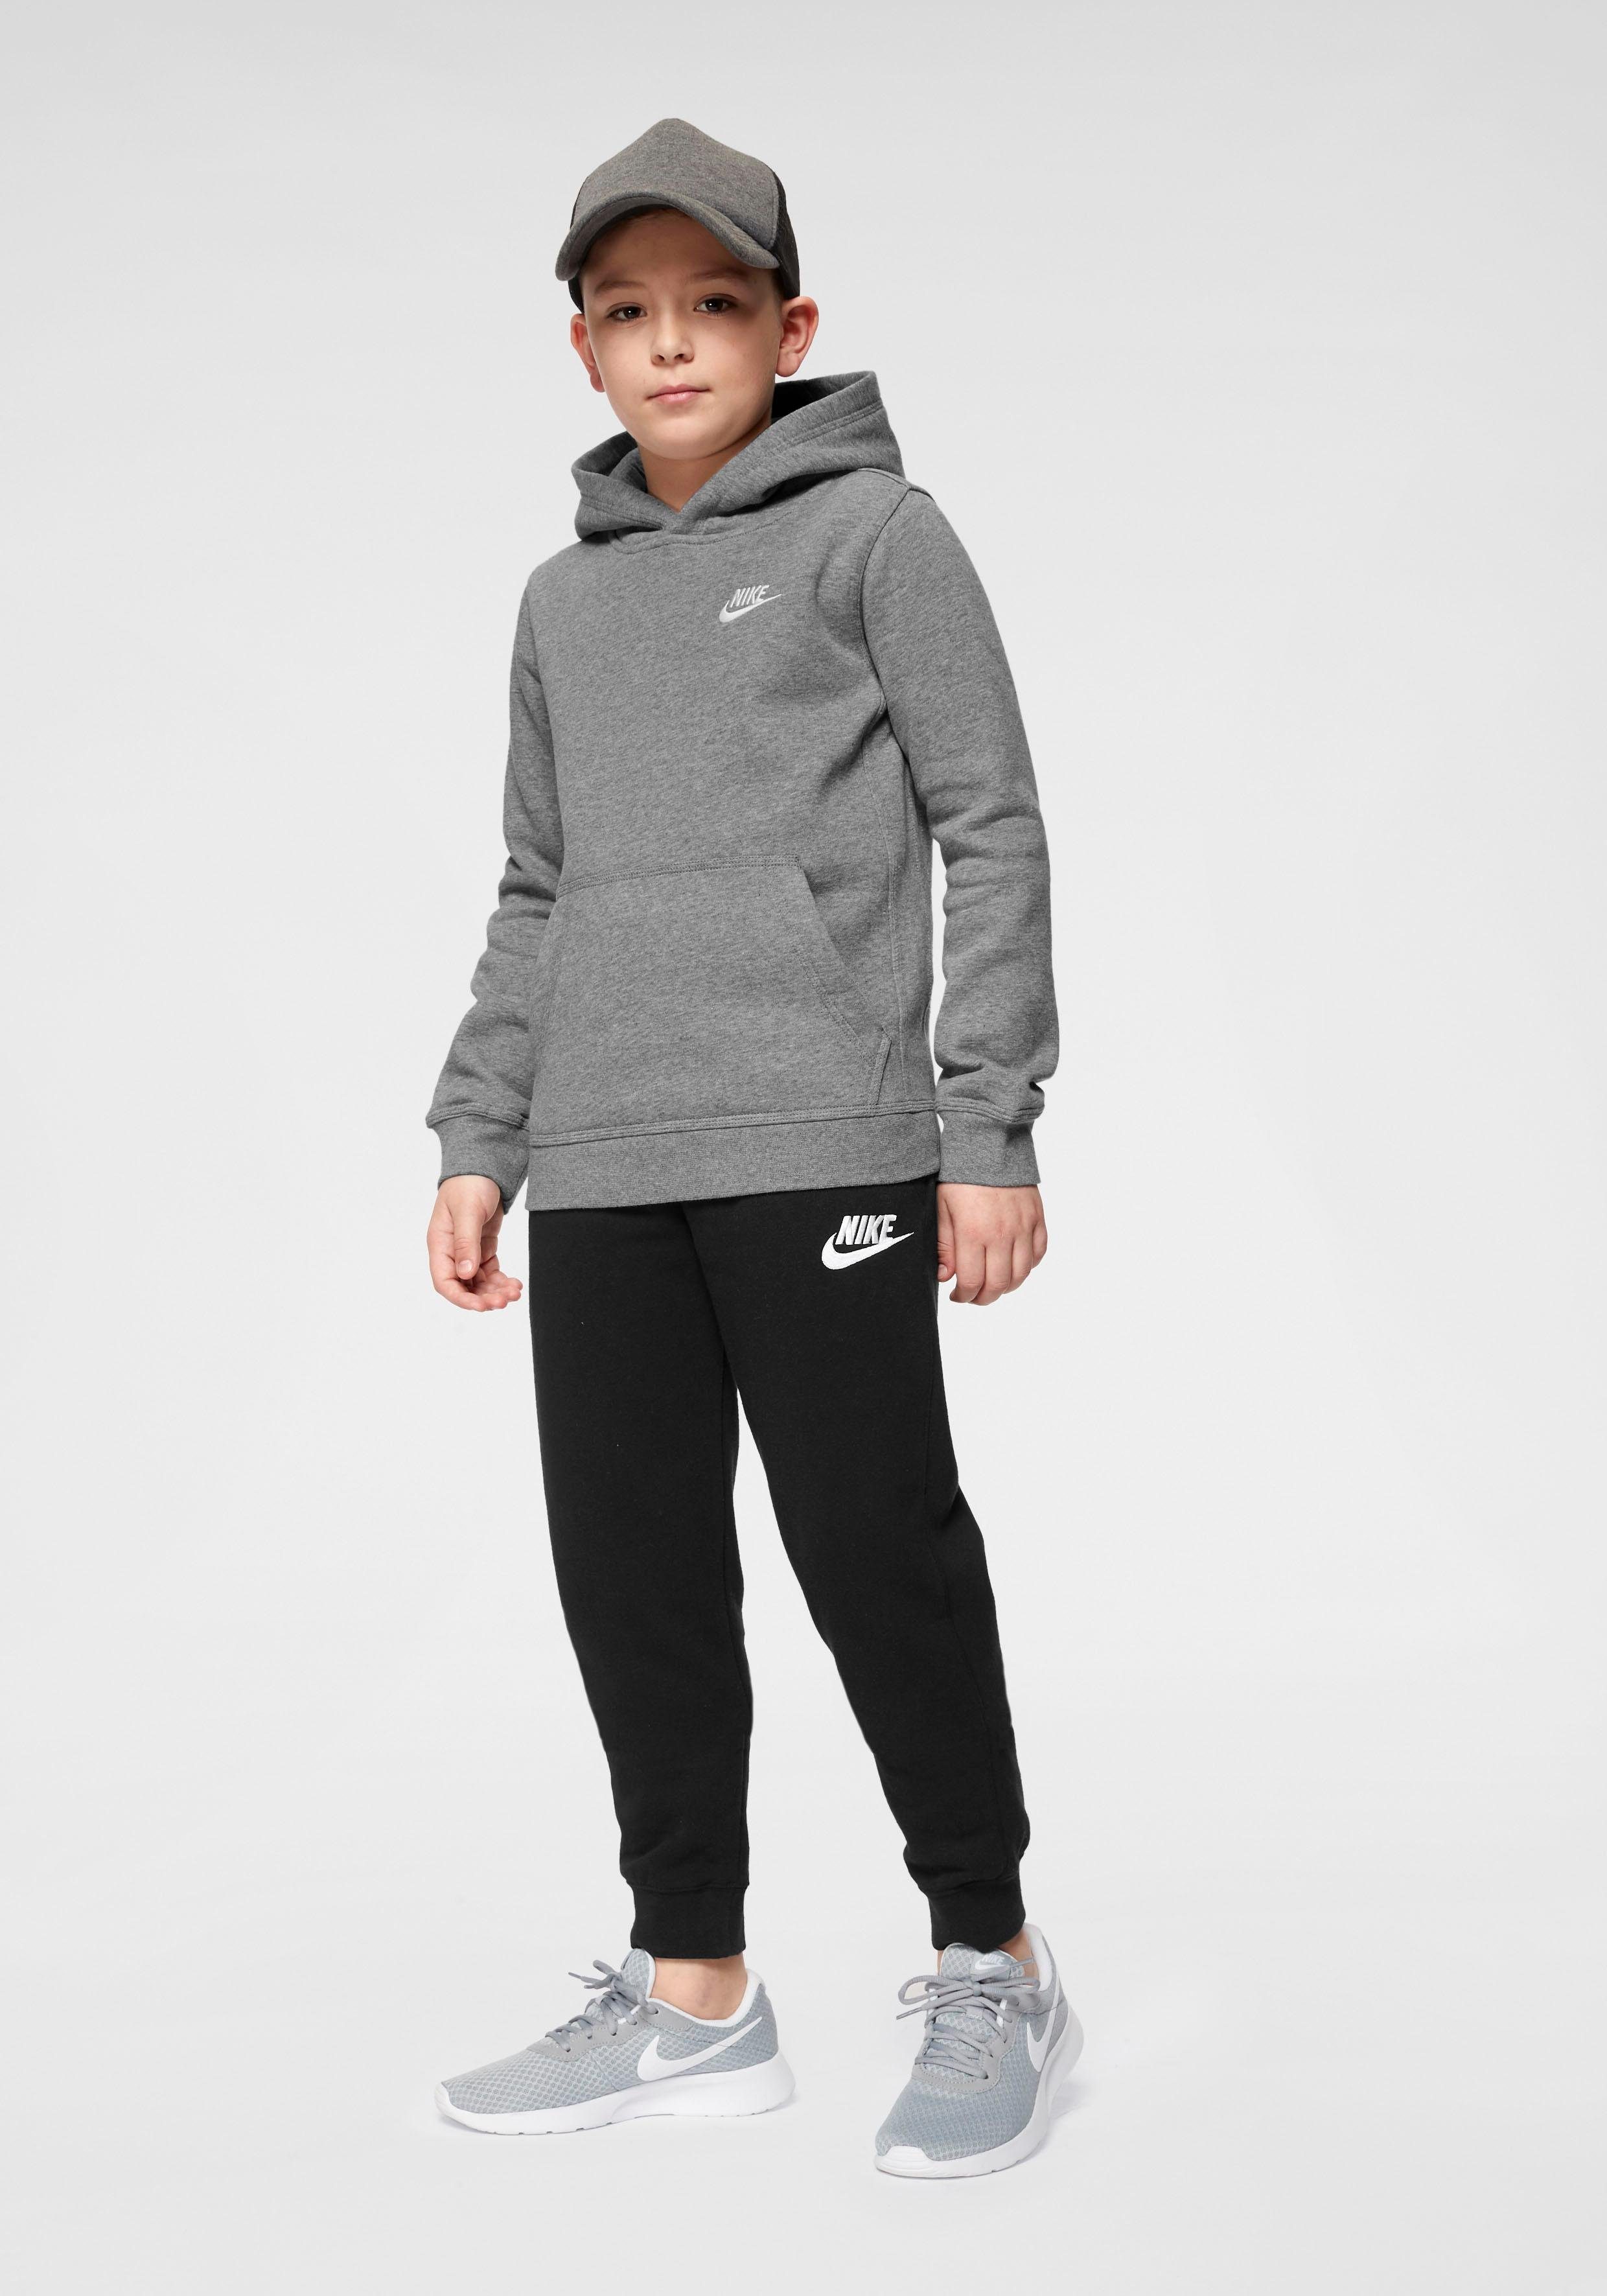 Nike Sportswear grau-meliert Pullover Hoodie Kids' Club Big Kapuzensweatshirt